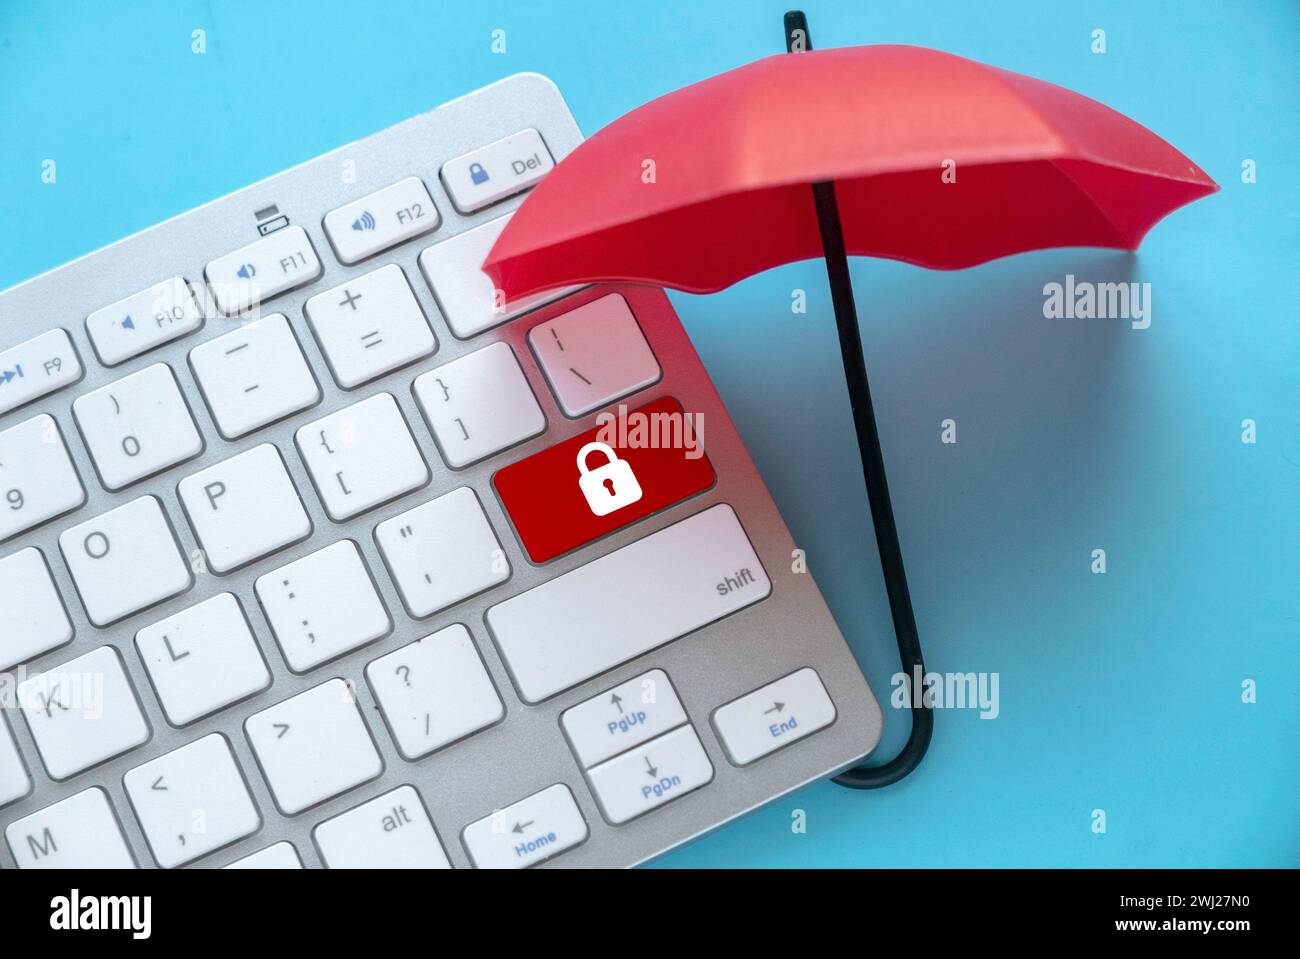 Concept de protection contre la cybermenace, pirate informatique, virus informatique. Parapluie rouge Protégez un bouton rouge avec icône de cadenas. Banque D'Images